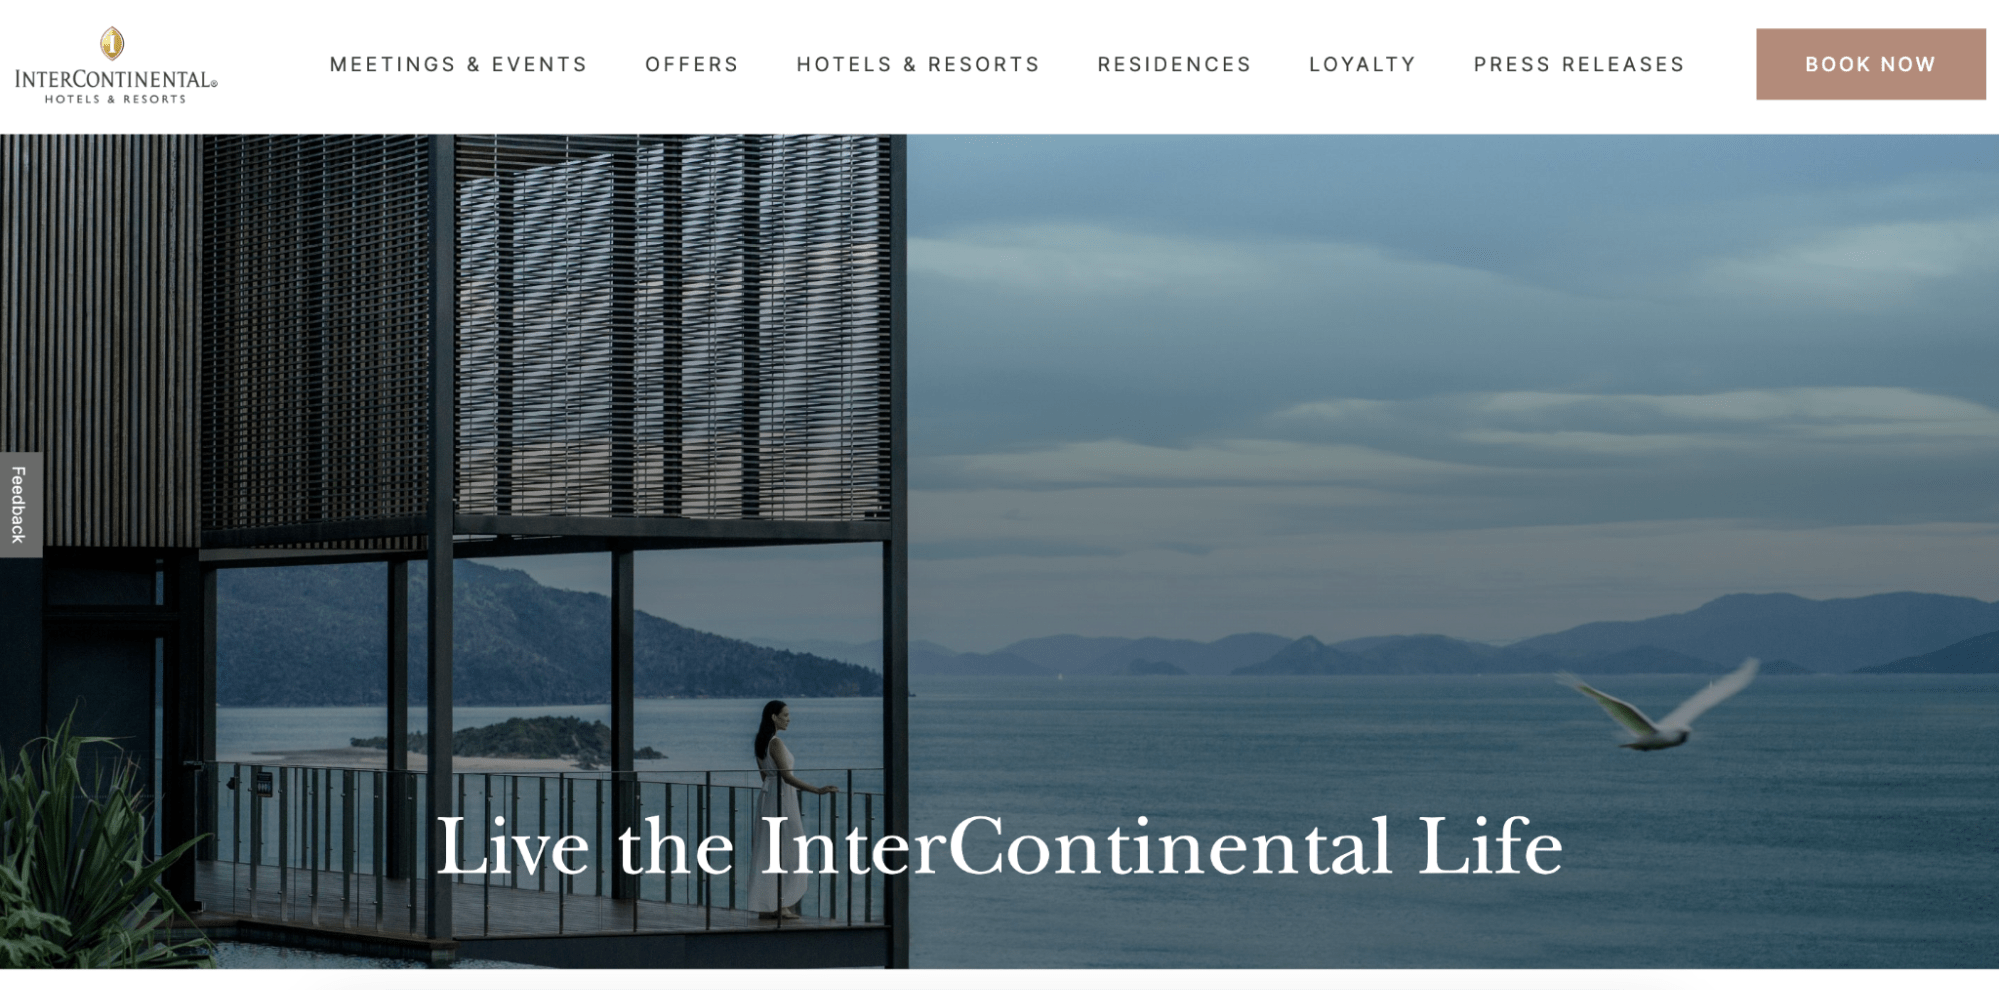 Top 6 Hotel Websites for Design Inspiration Image 2